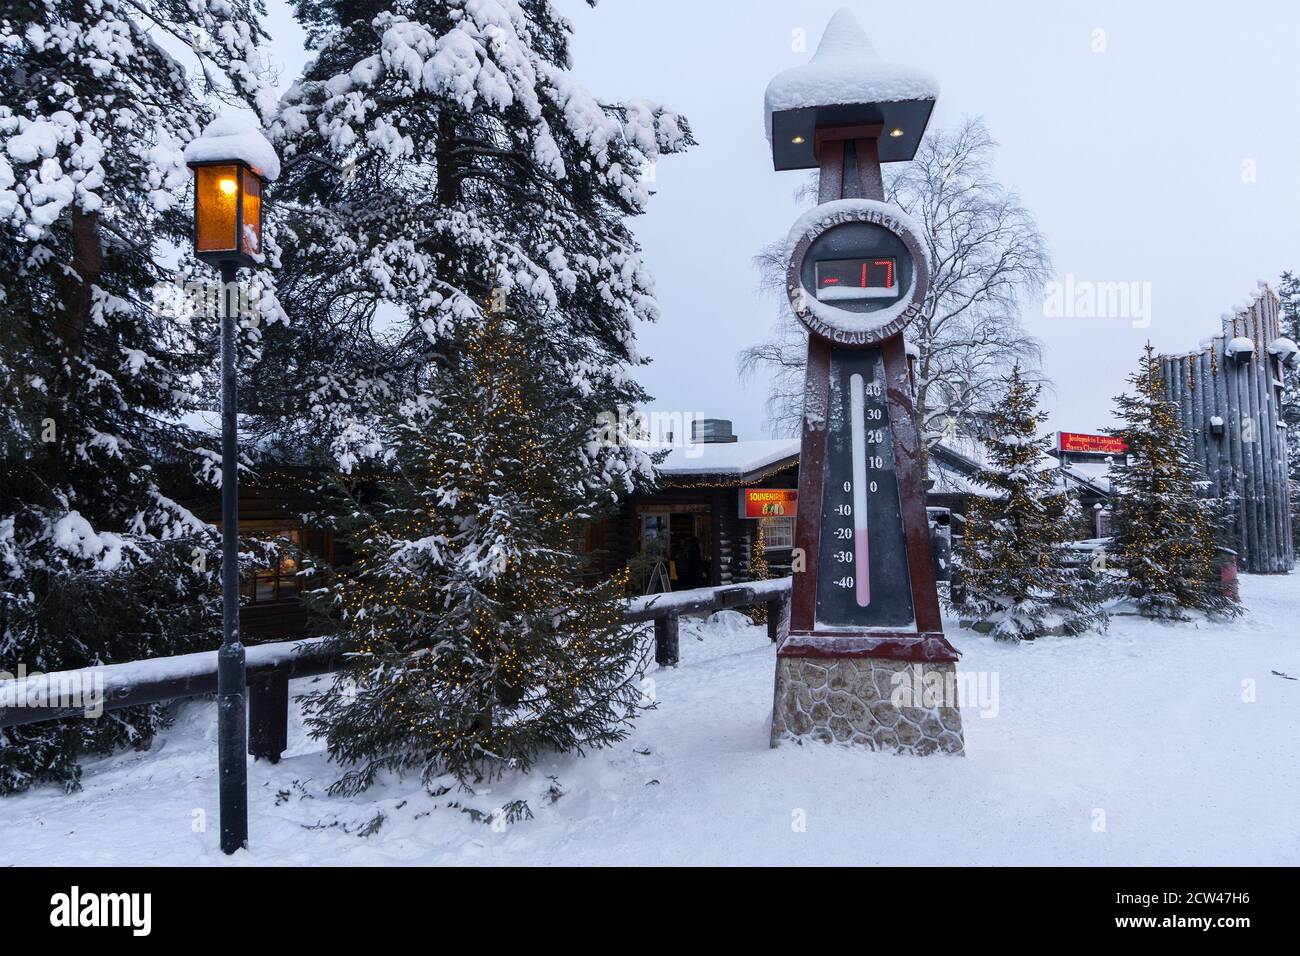 Grande horloge de rue gelée montrant 17 degrés en dessous de zéro dans le village du Père Noël. Noël d'hiver et le nouvel an arrière-plan. Banque D'Images